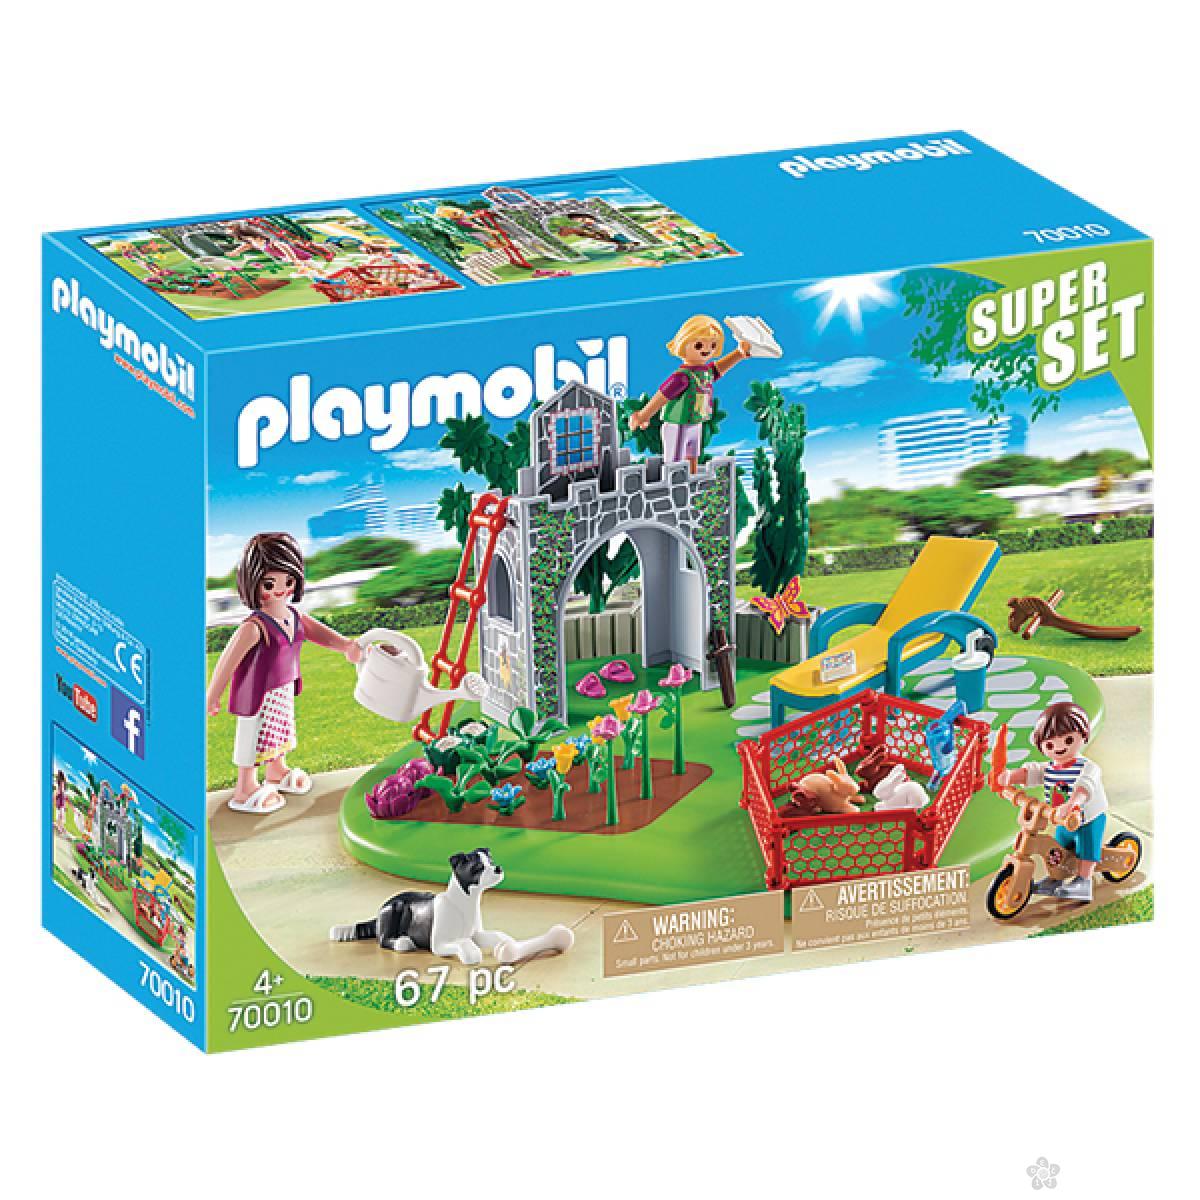 Playmobile Super Set - Bašta 23191 